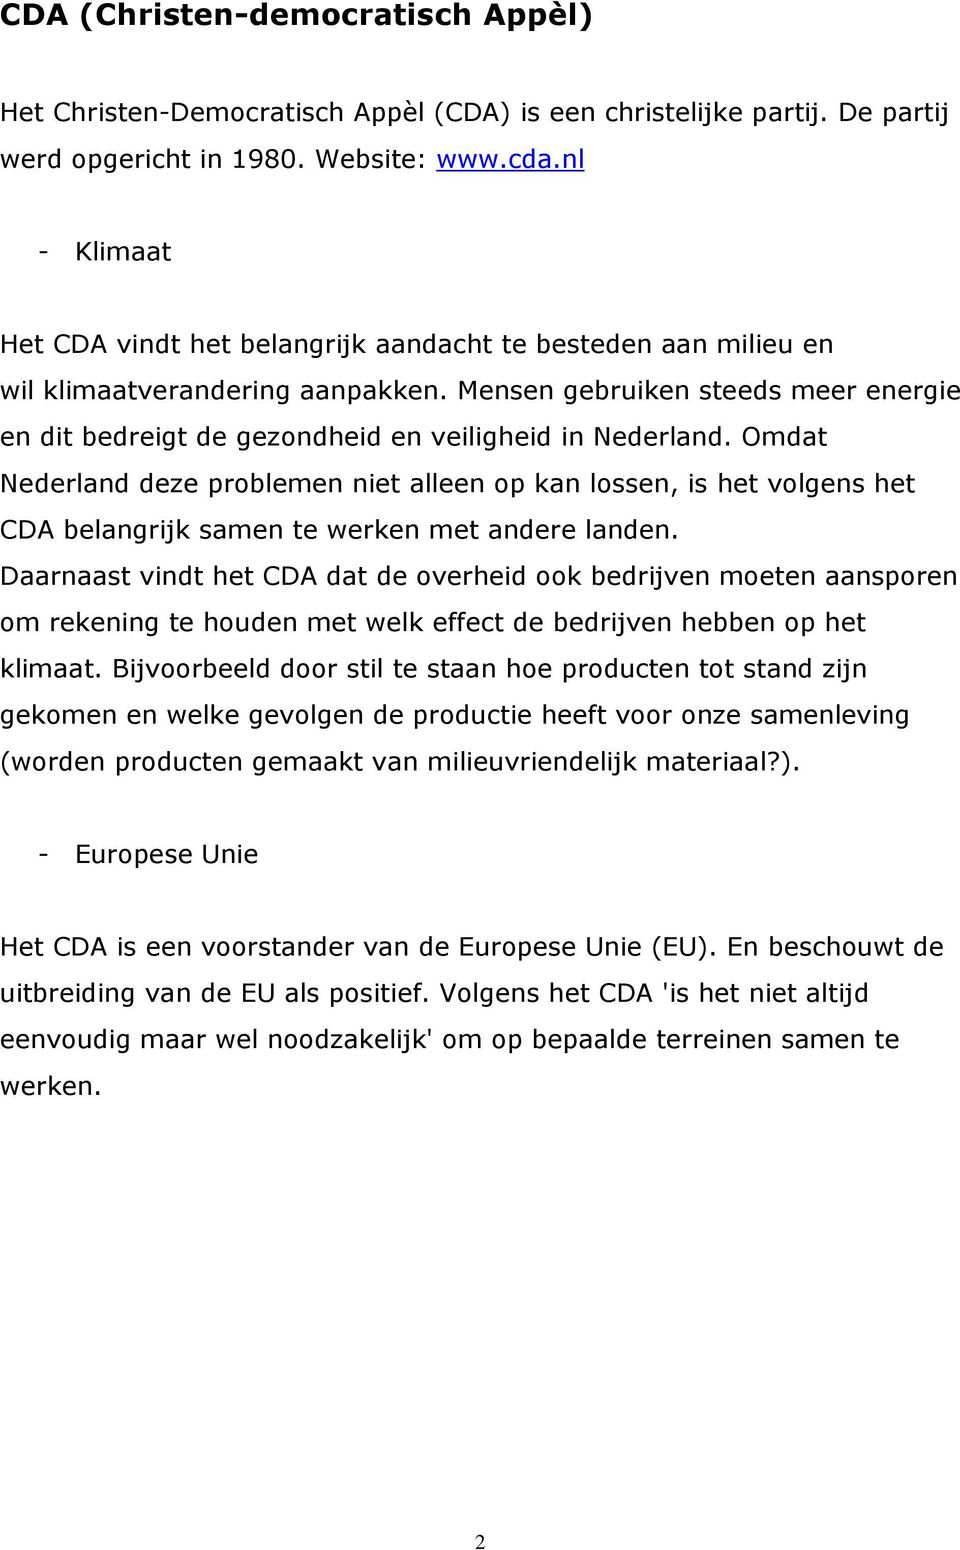 Omdat Nederland deze problemen niet alleen op kan lossen, is het volgens het CDA belangrijk samen te werken met andere landen.